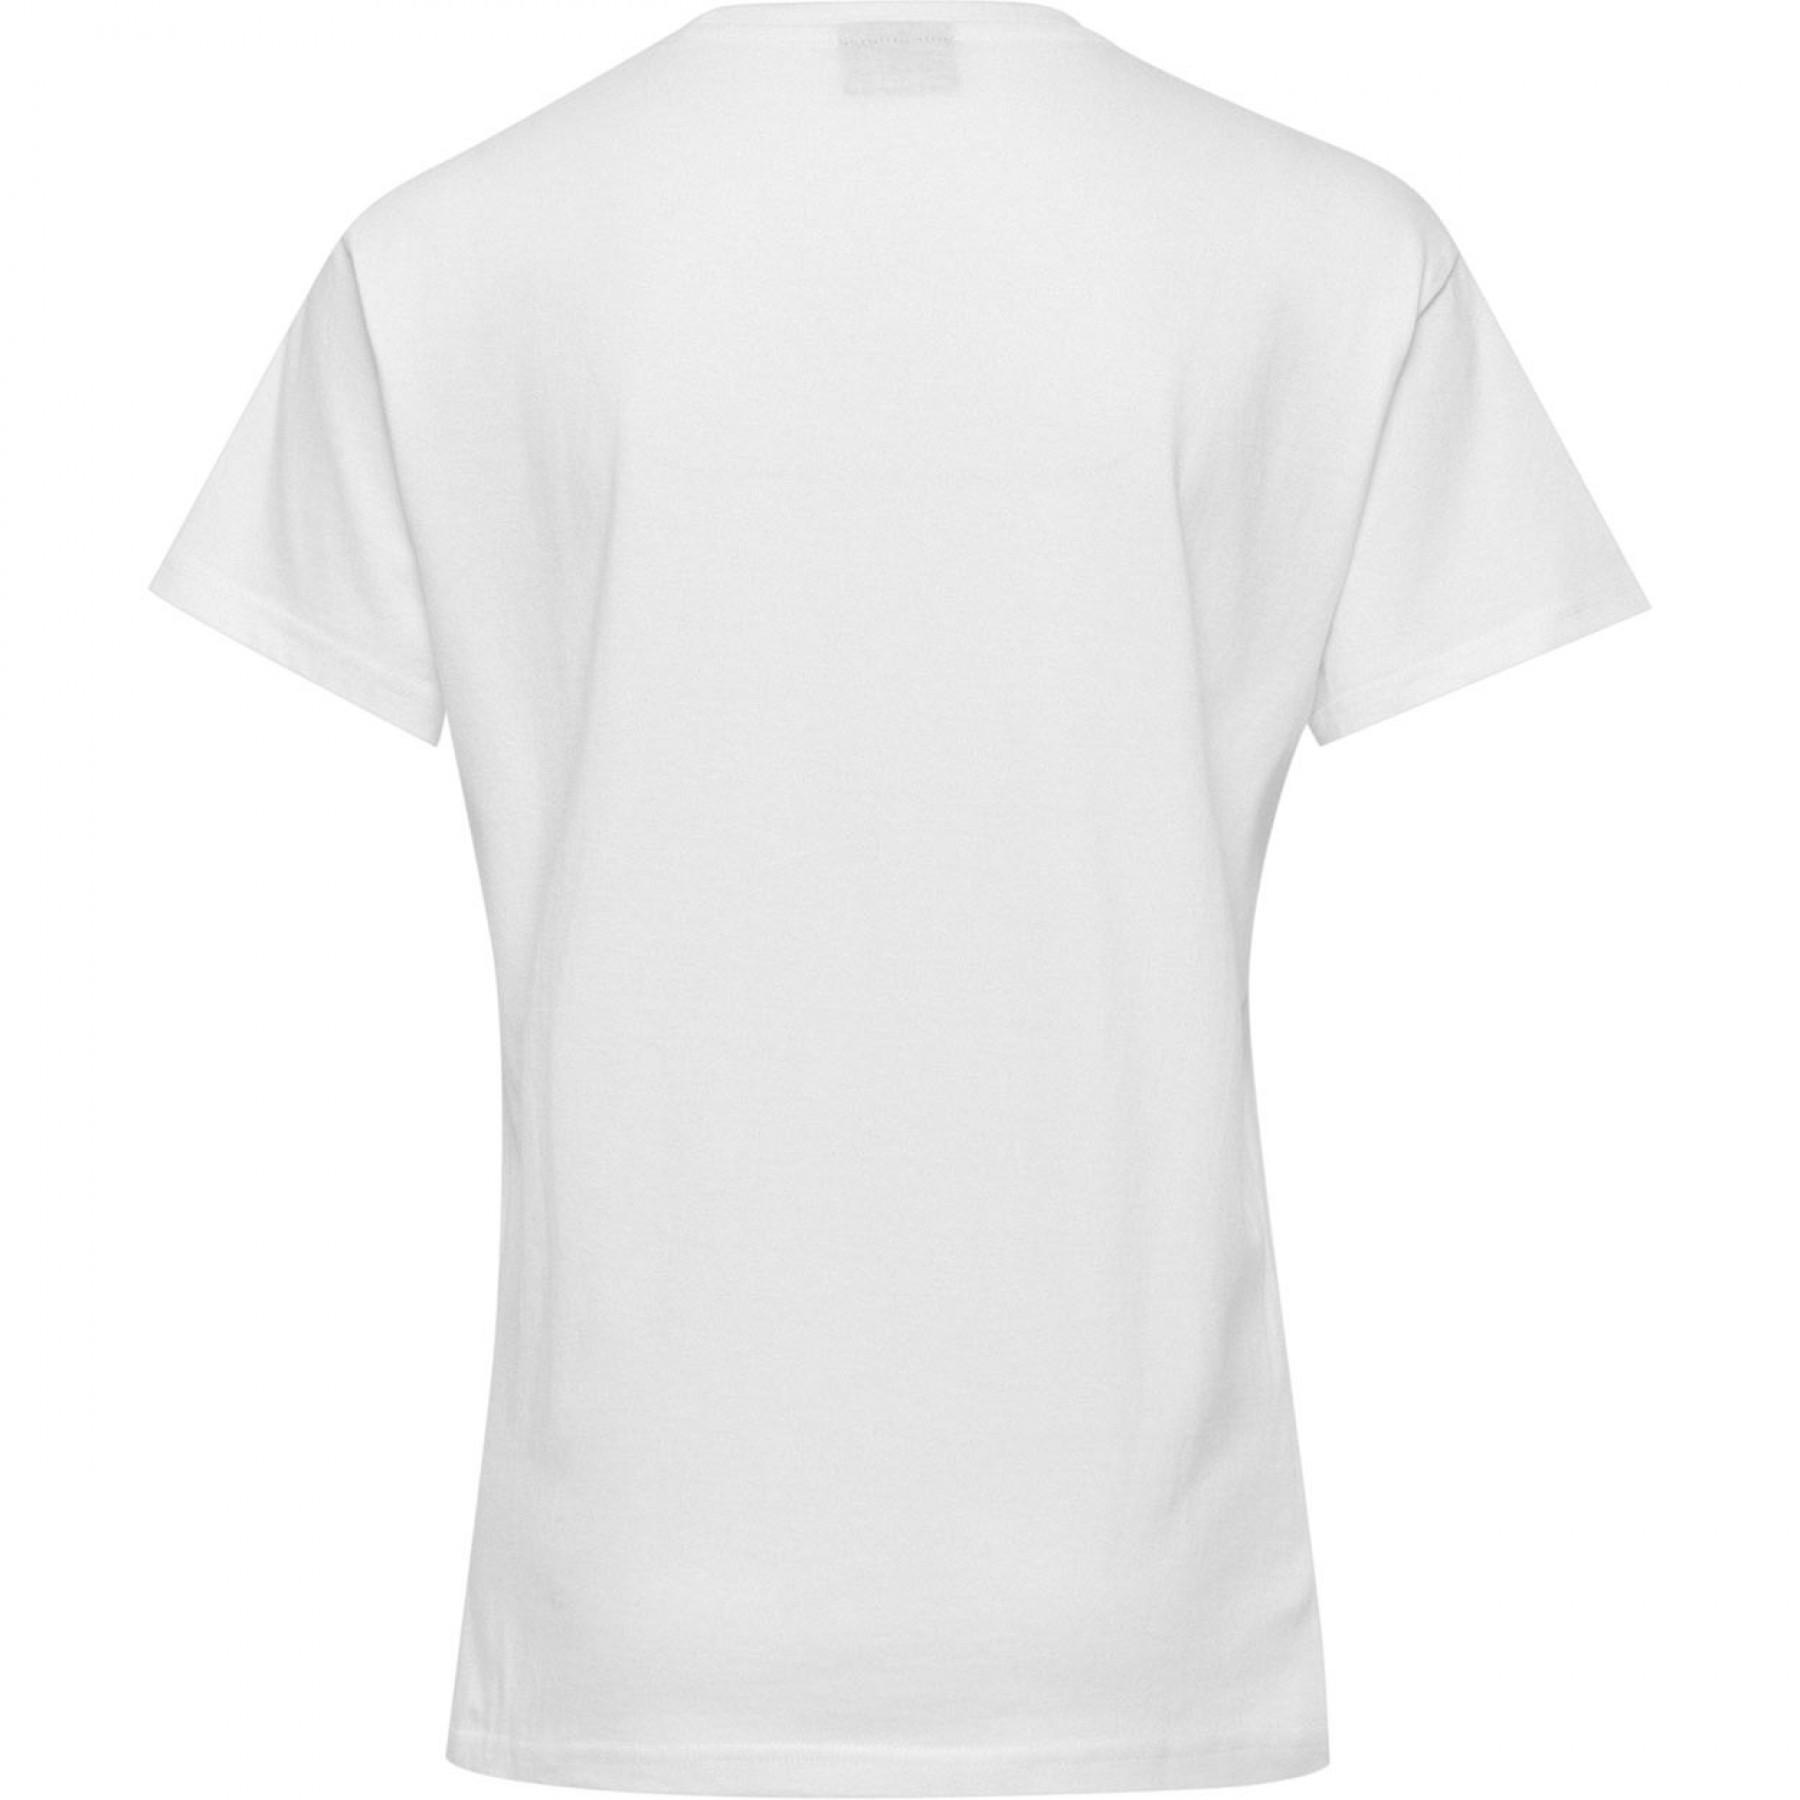 Camiseta mujer Hummel Cotton Logo